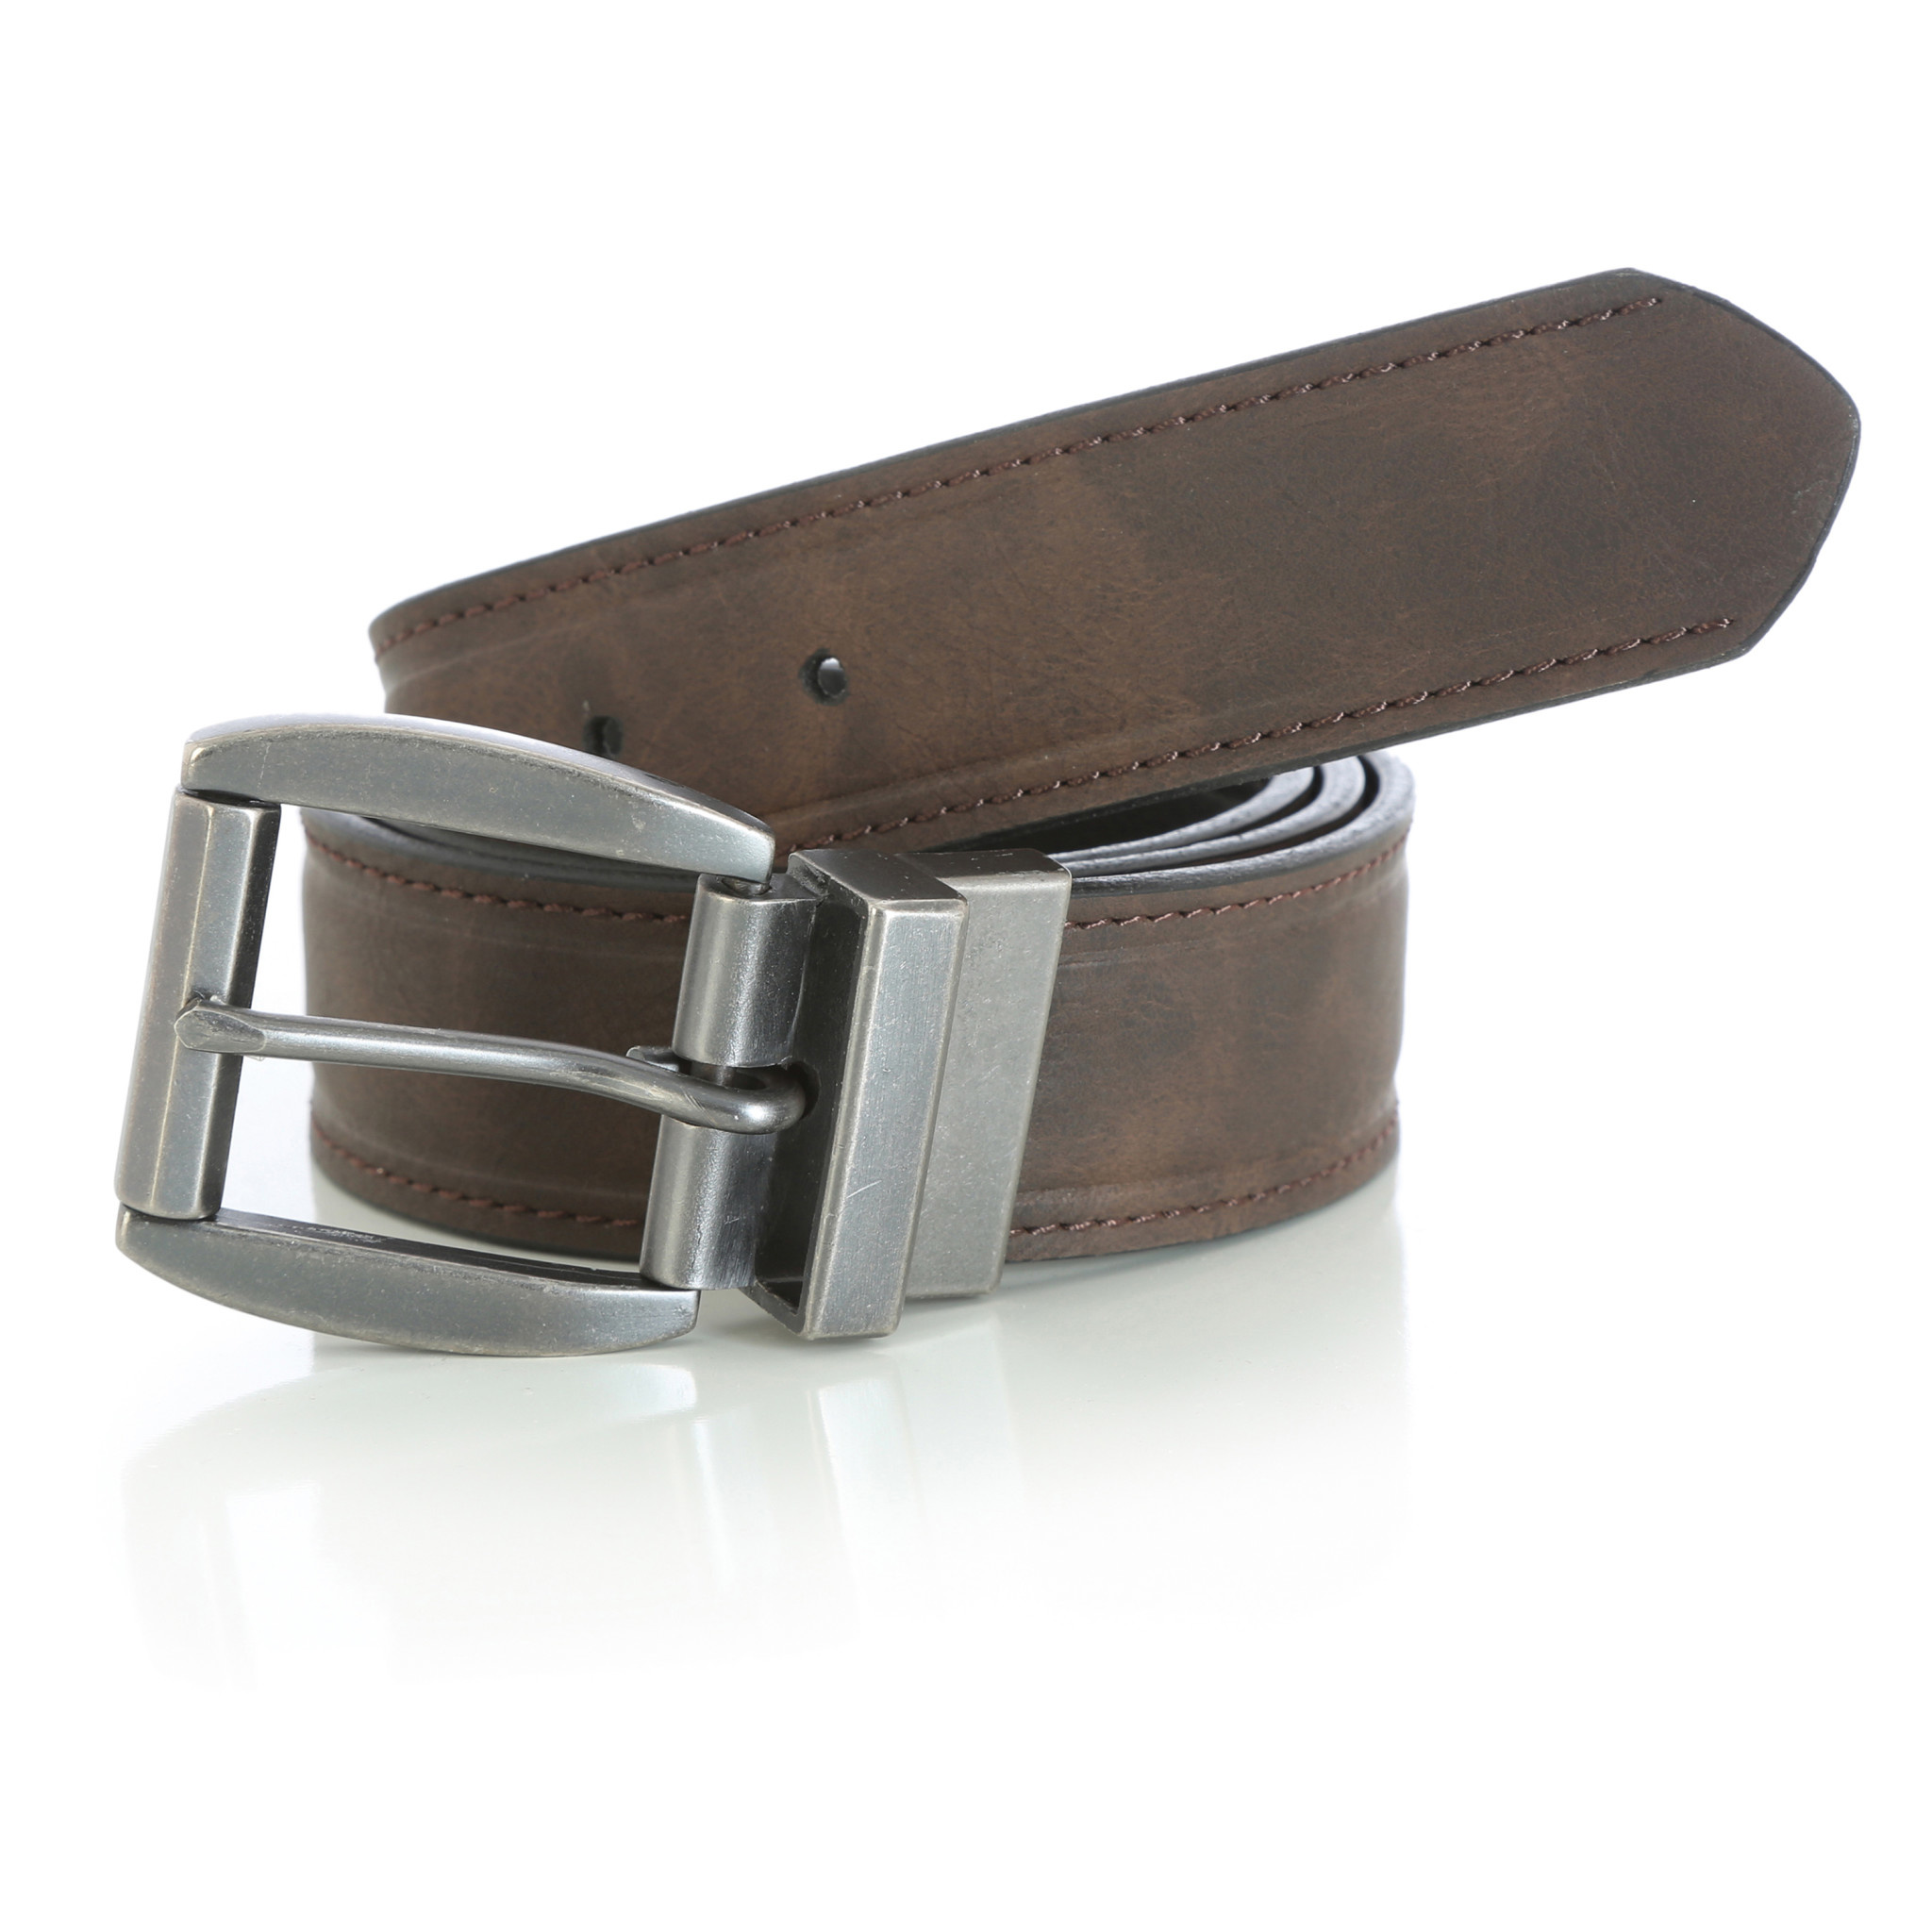 Ремень вранглер мужской. Ремень Wrangler Leather Belts. Wrangler Leather Belts 90/105. Ремень Wrangler w0j068x1x. Ремень мужской Wrangler w0b55u185.